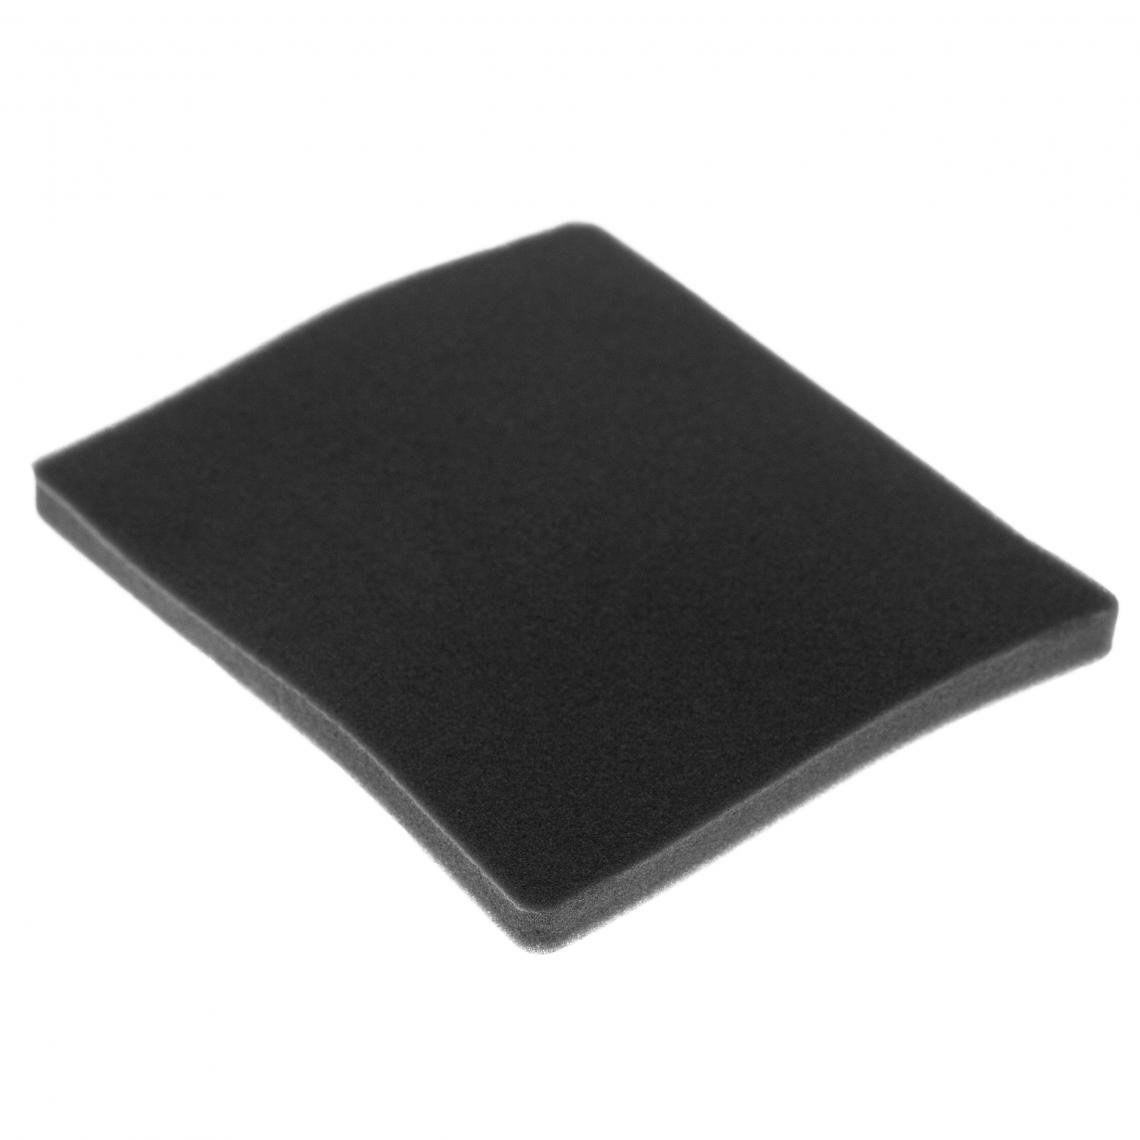 Vhbw - vhbw Filtre compatible avec Electrolux ZCX6204 (910286612) aspirateur - filtre de sortie d'air (filtre éponge), noir - Accessoire entretien des sols